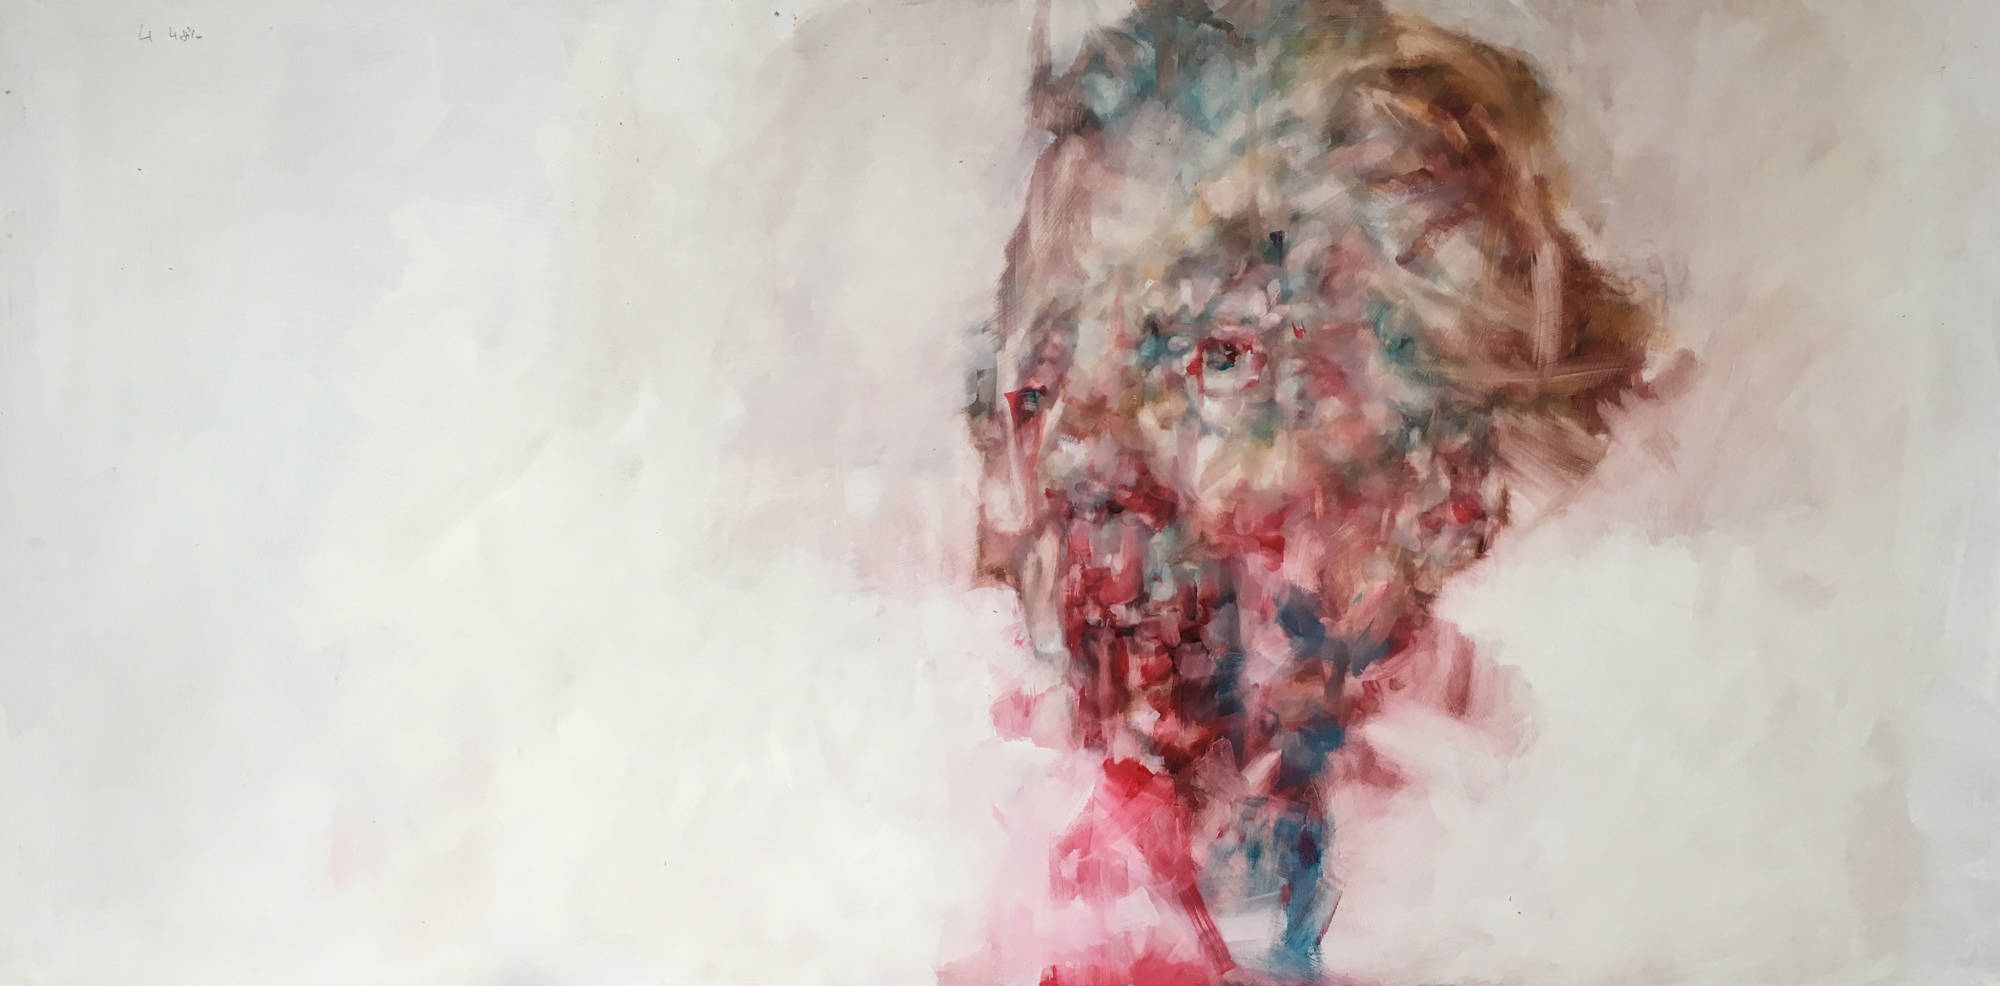 Alzheimer's painting by artist Gregor Harvie